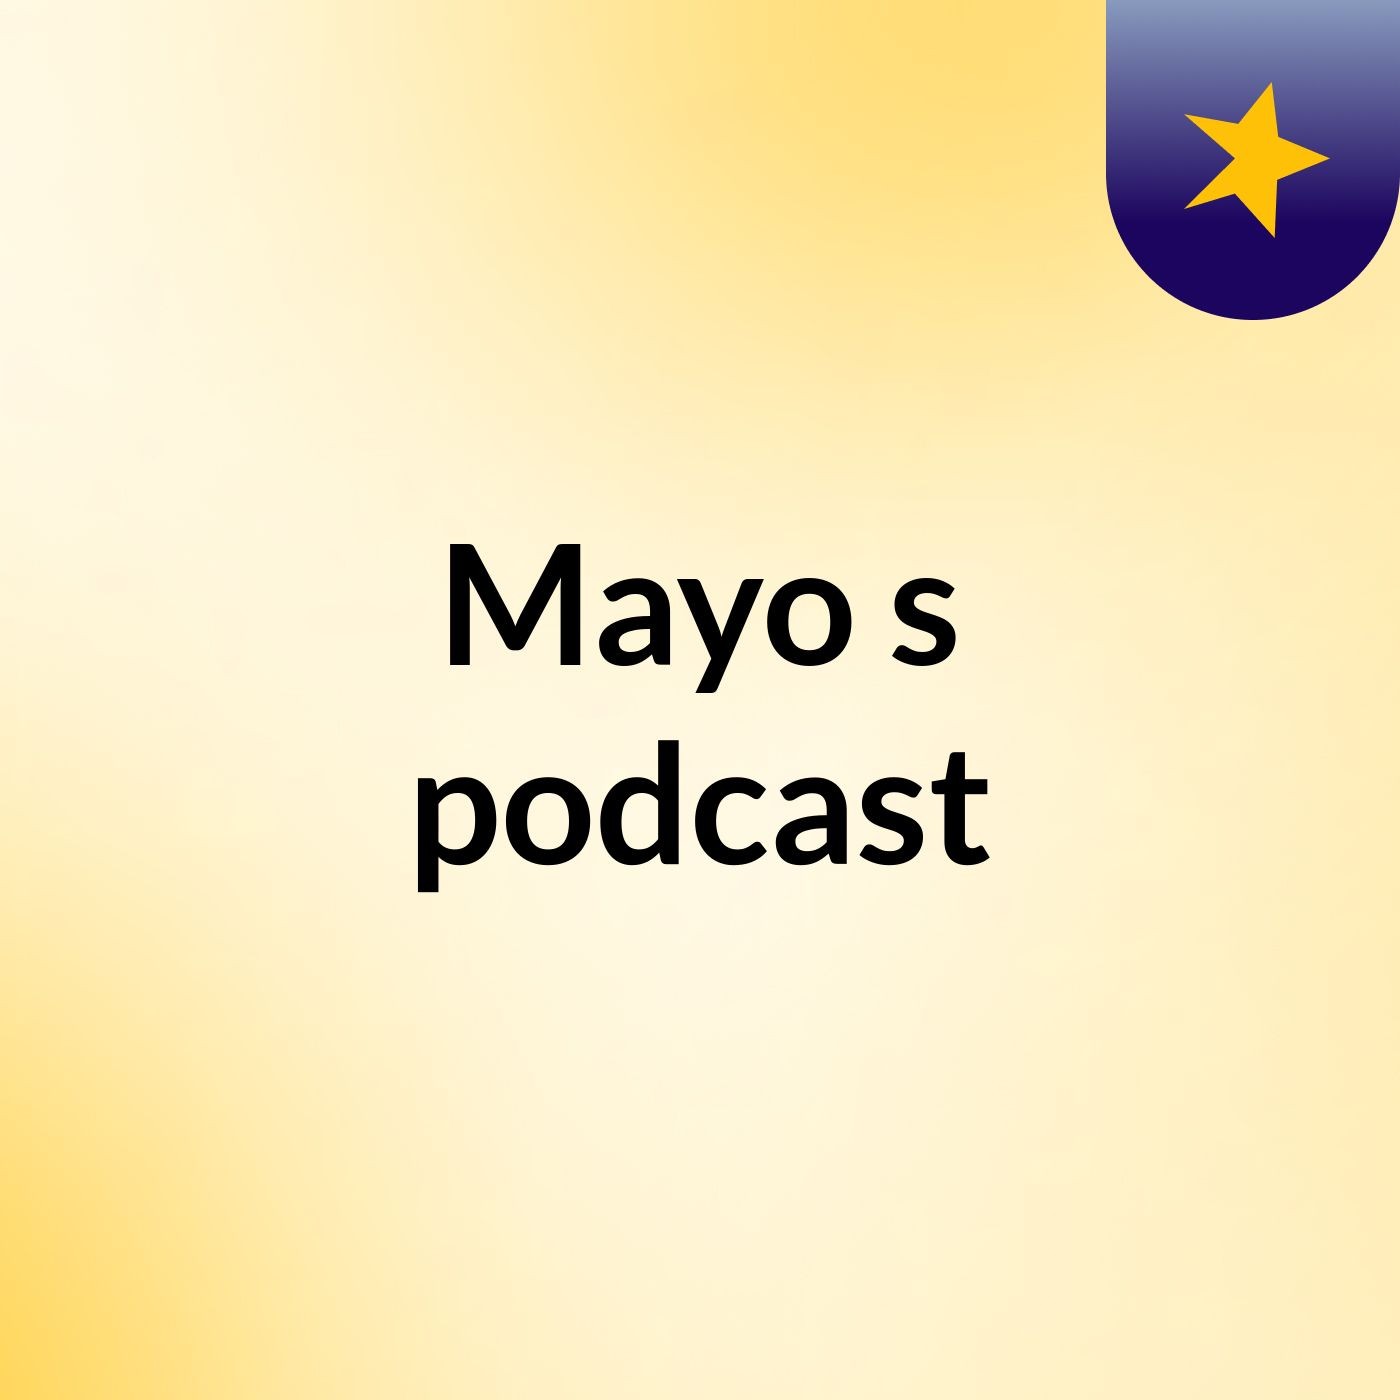 Episode 2 - Mayo's podcast